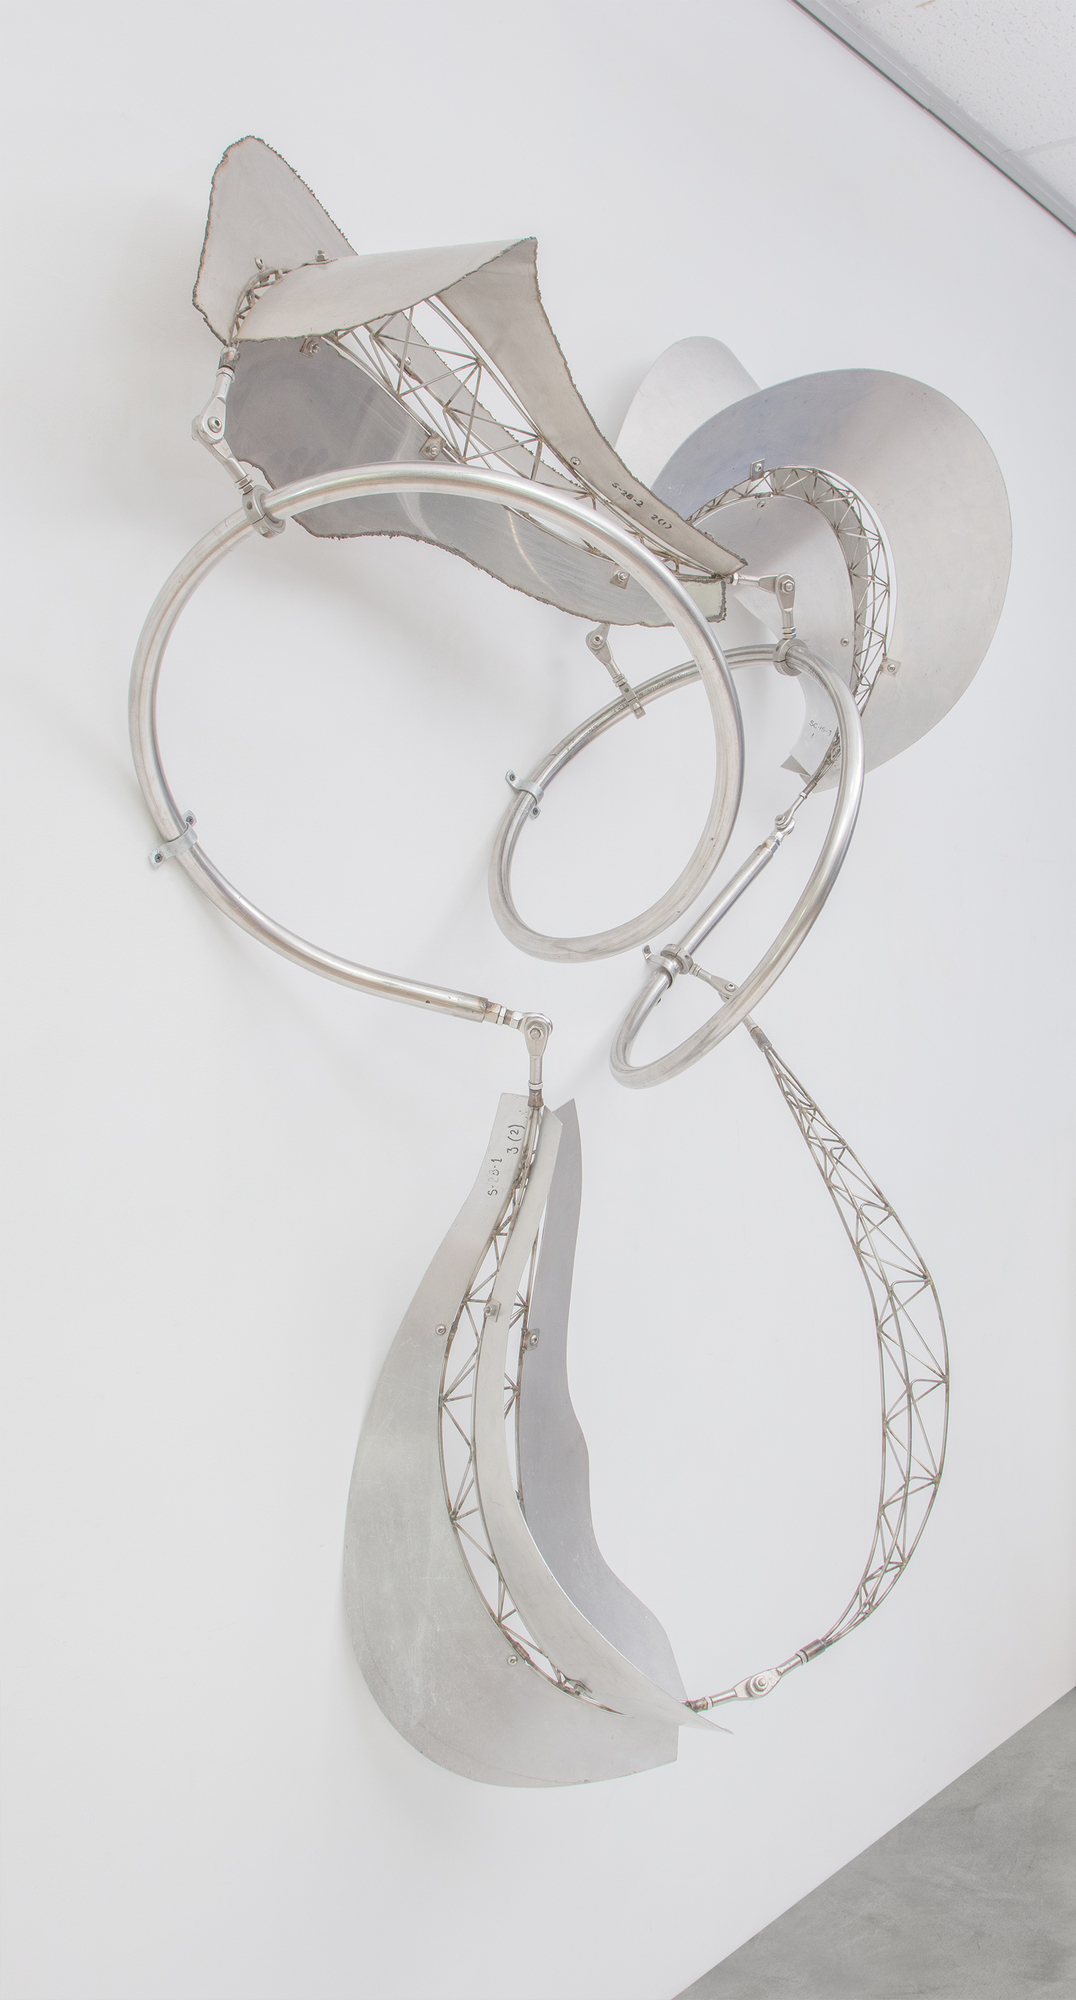 弗兰克-斯特拉（Frank Stella）的巴厘岛系列雕塑作品以浮动和流动的形式为特征，延伸至观者的空间，并邀请观者与其环境互动。在巴厘岛文化中，&quot;dadap &quot;是一种与生长和仪式意义相关的树木，它反映了斯特拉雕塑的有机和动态性质。斯特拉将竹子改用不锈钢和铝材，保留了巴厘岛美学的本质，即推崇有机、流动、动态地与空间互动的形式。Dadap 展示了斯特拉主题探索的连续性，其作品的精神超越了材料。金属具有不同的质感、反射性以及与光线和空间的互动性，但它坚持运动和互动的原则。这是形式和概念在不同媒介间的创造性转换，既保留了最初灵感的精神，又允许新材料的特性在全新的语境中表达这些想法。